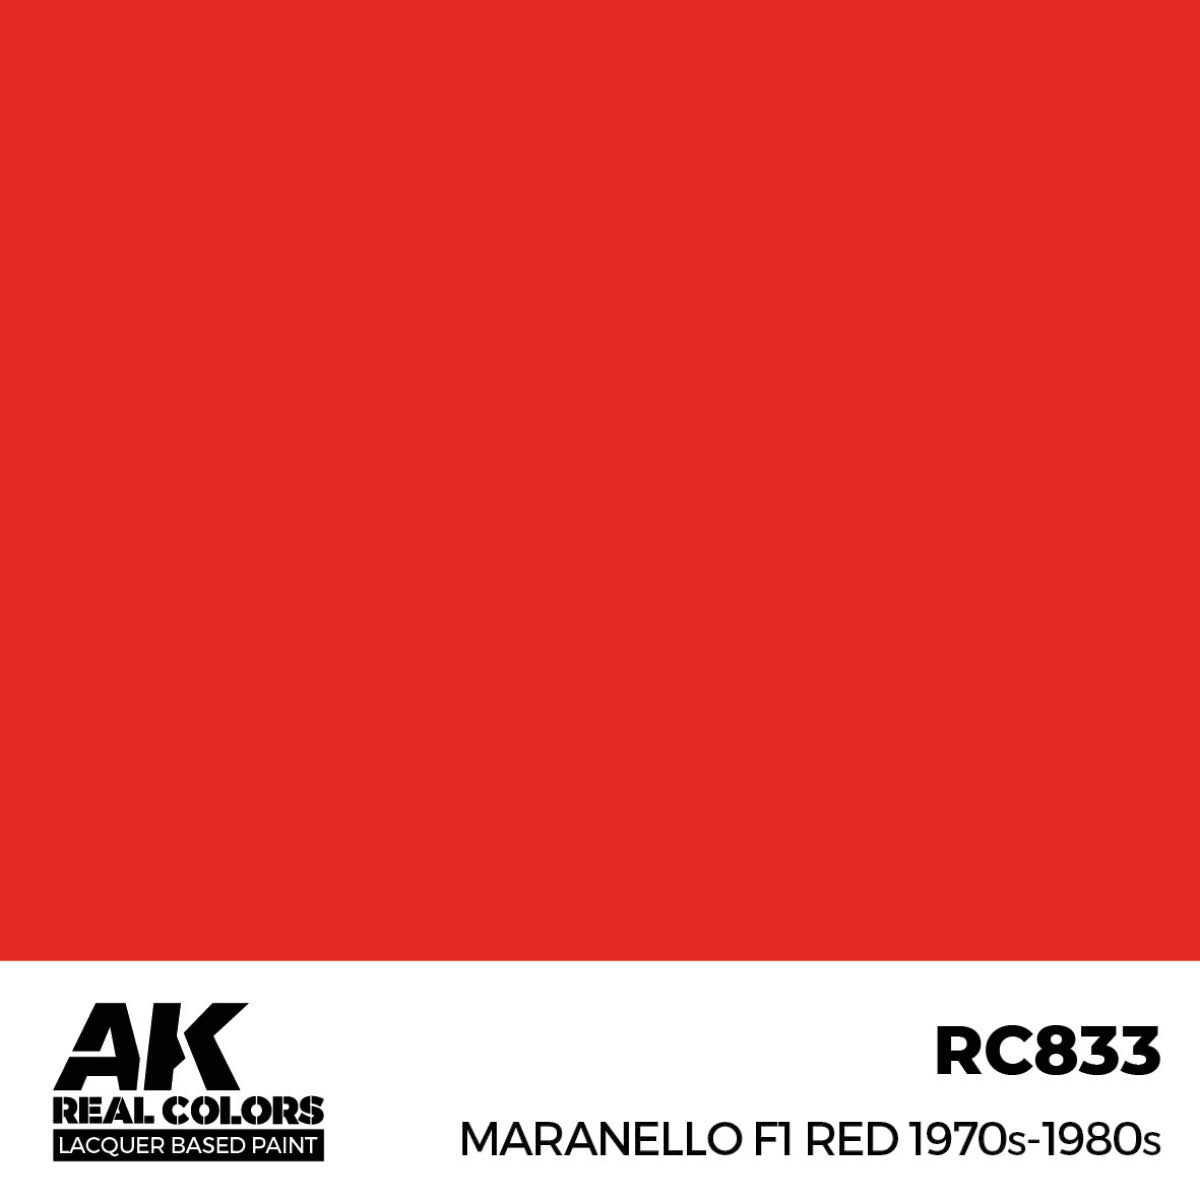 Maranello F1 Red 1970s-1980s